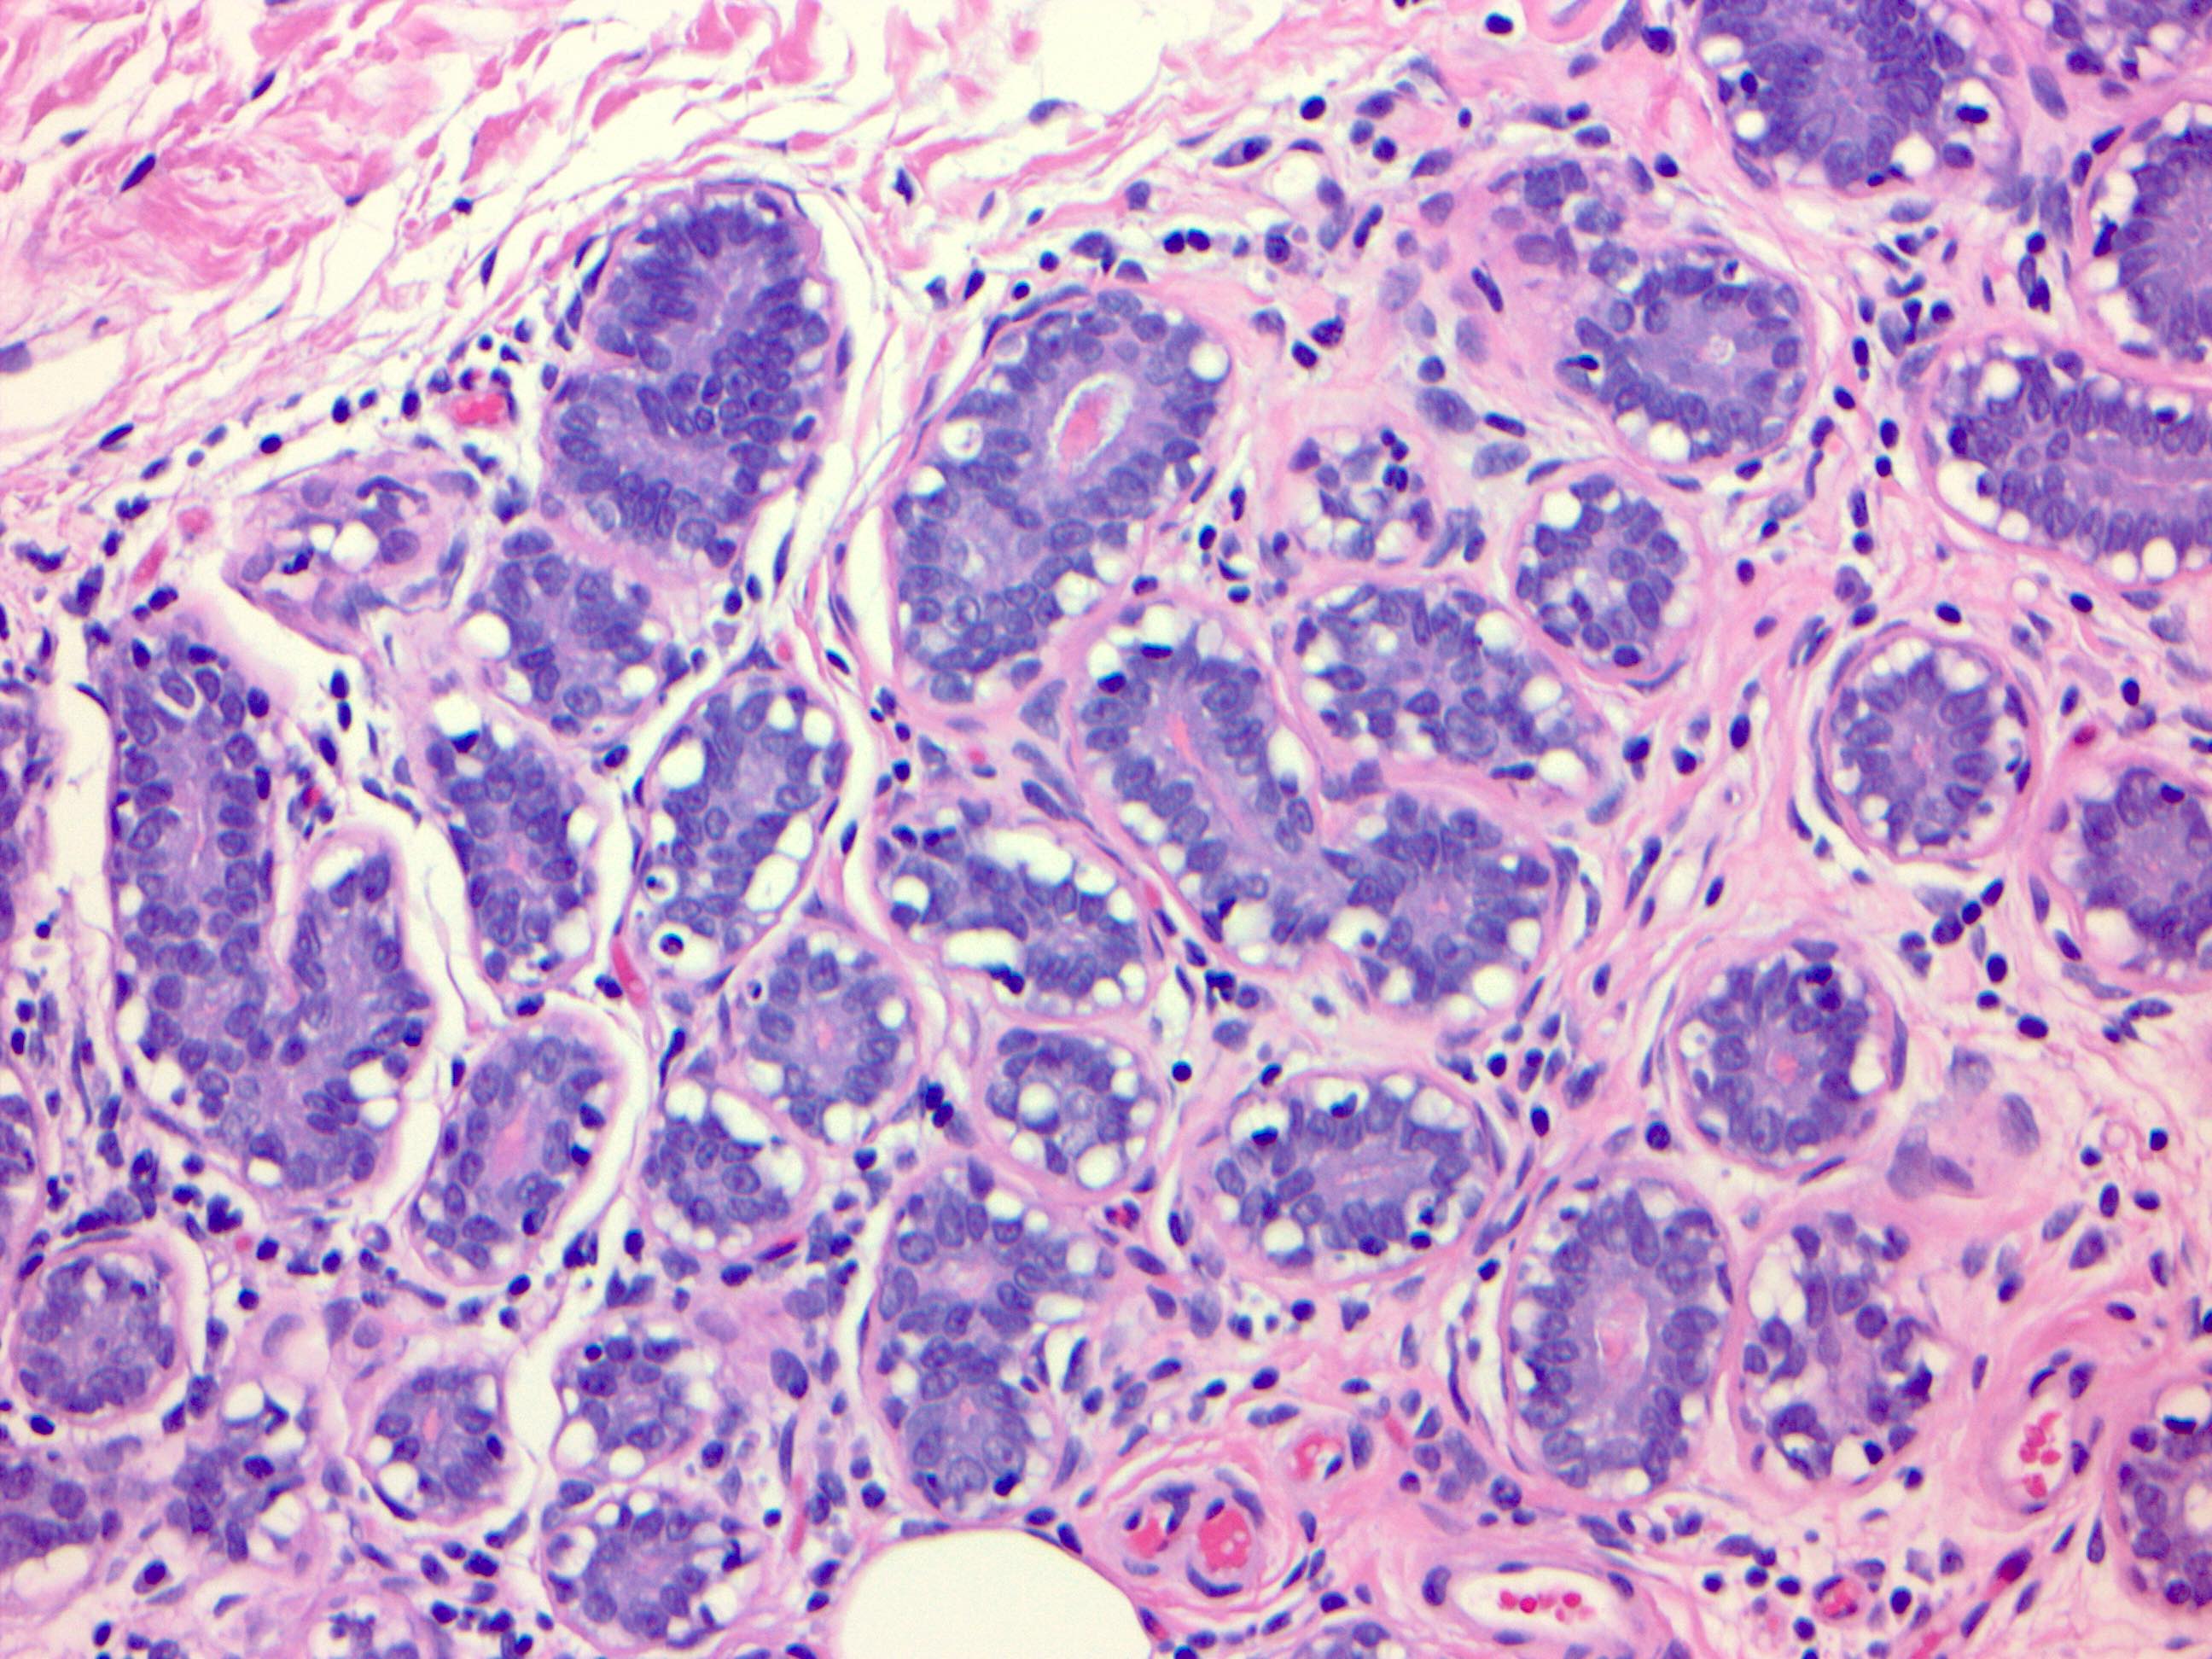 Myoepithelial cells